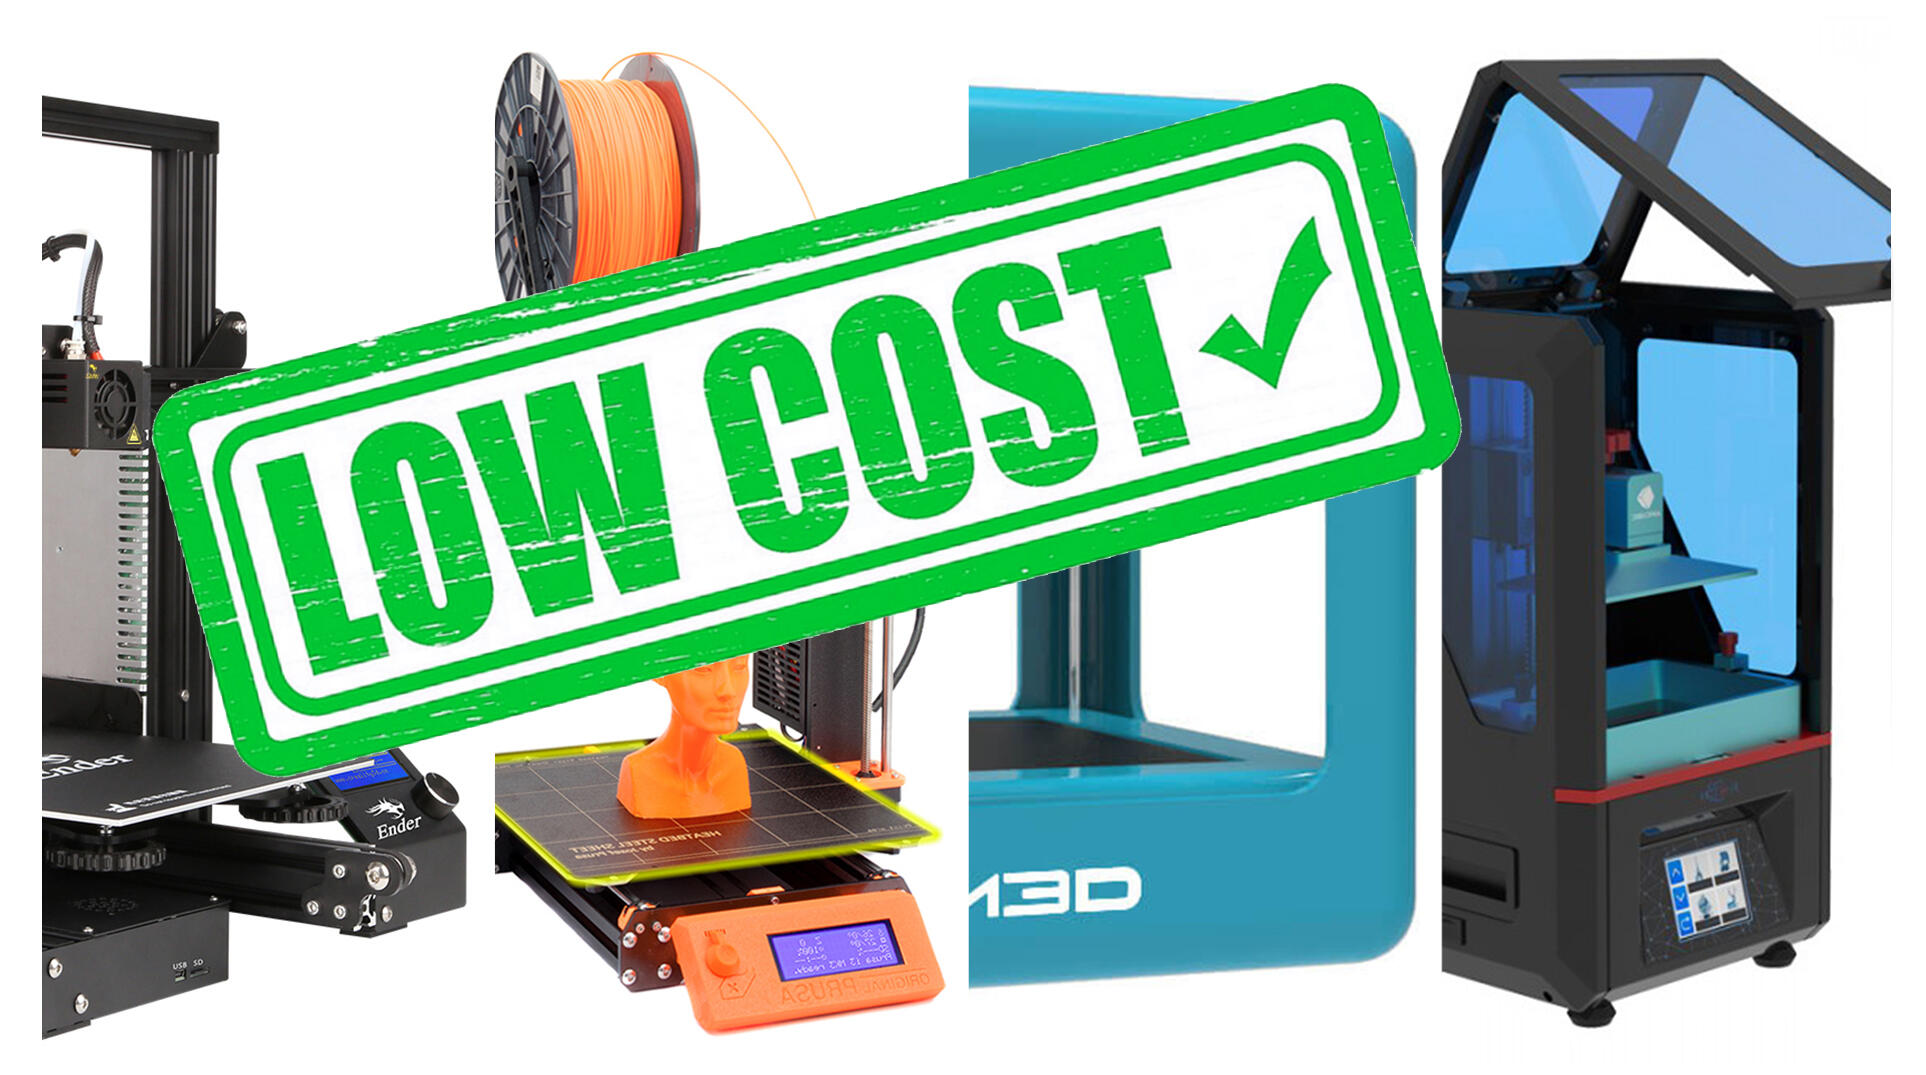 Quali sono le funzionalità più importanti da considerare quando si compra  una stampante 3D economica? - Quora